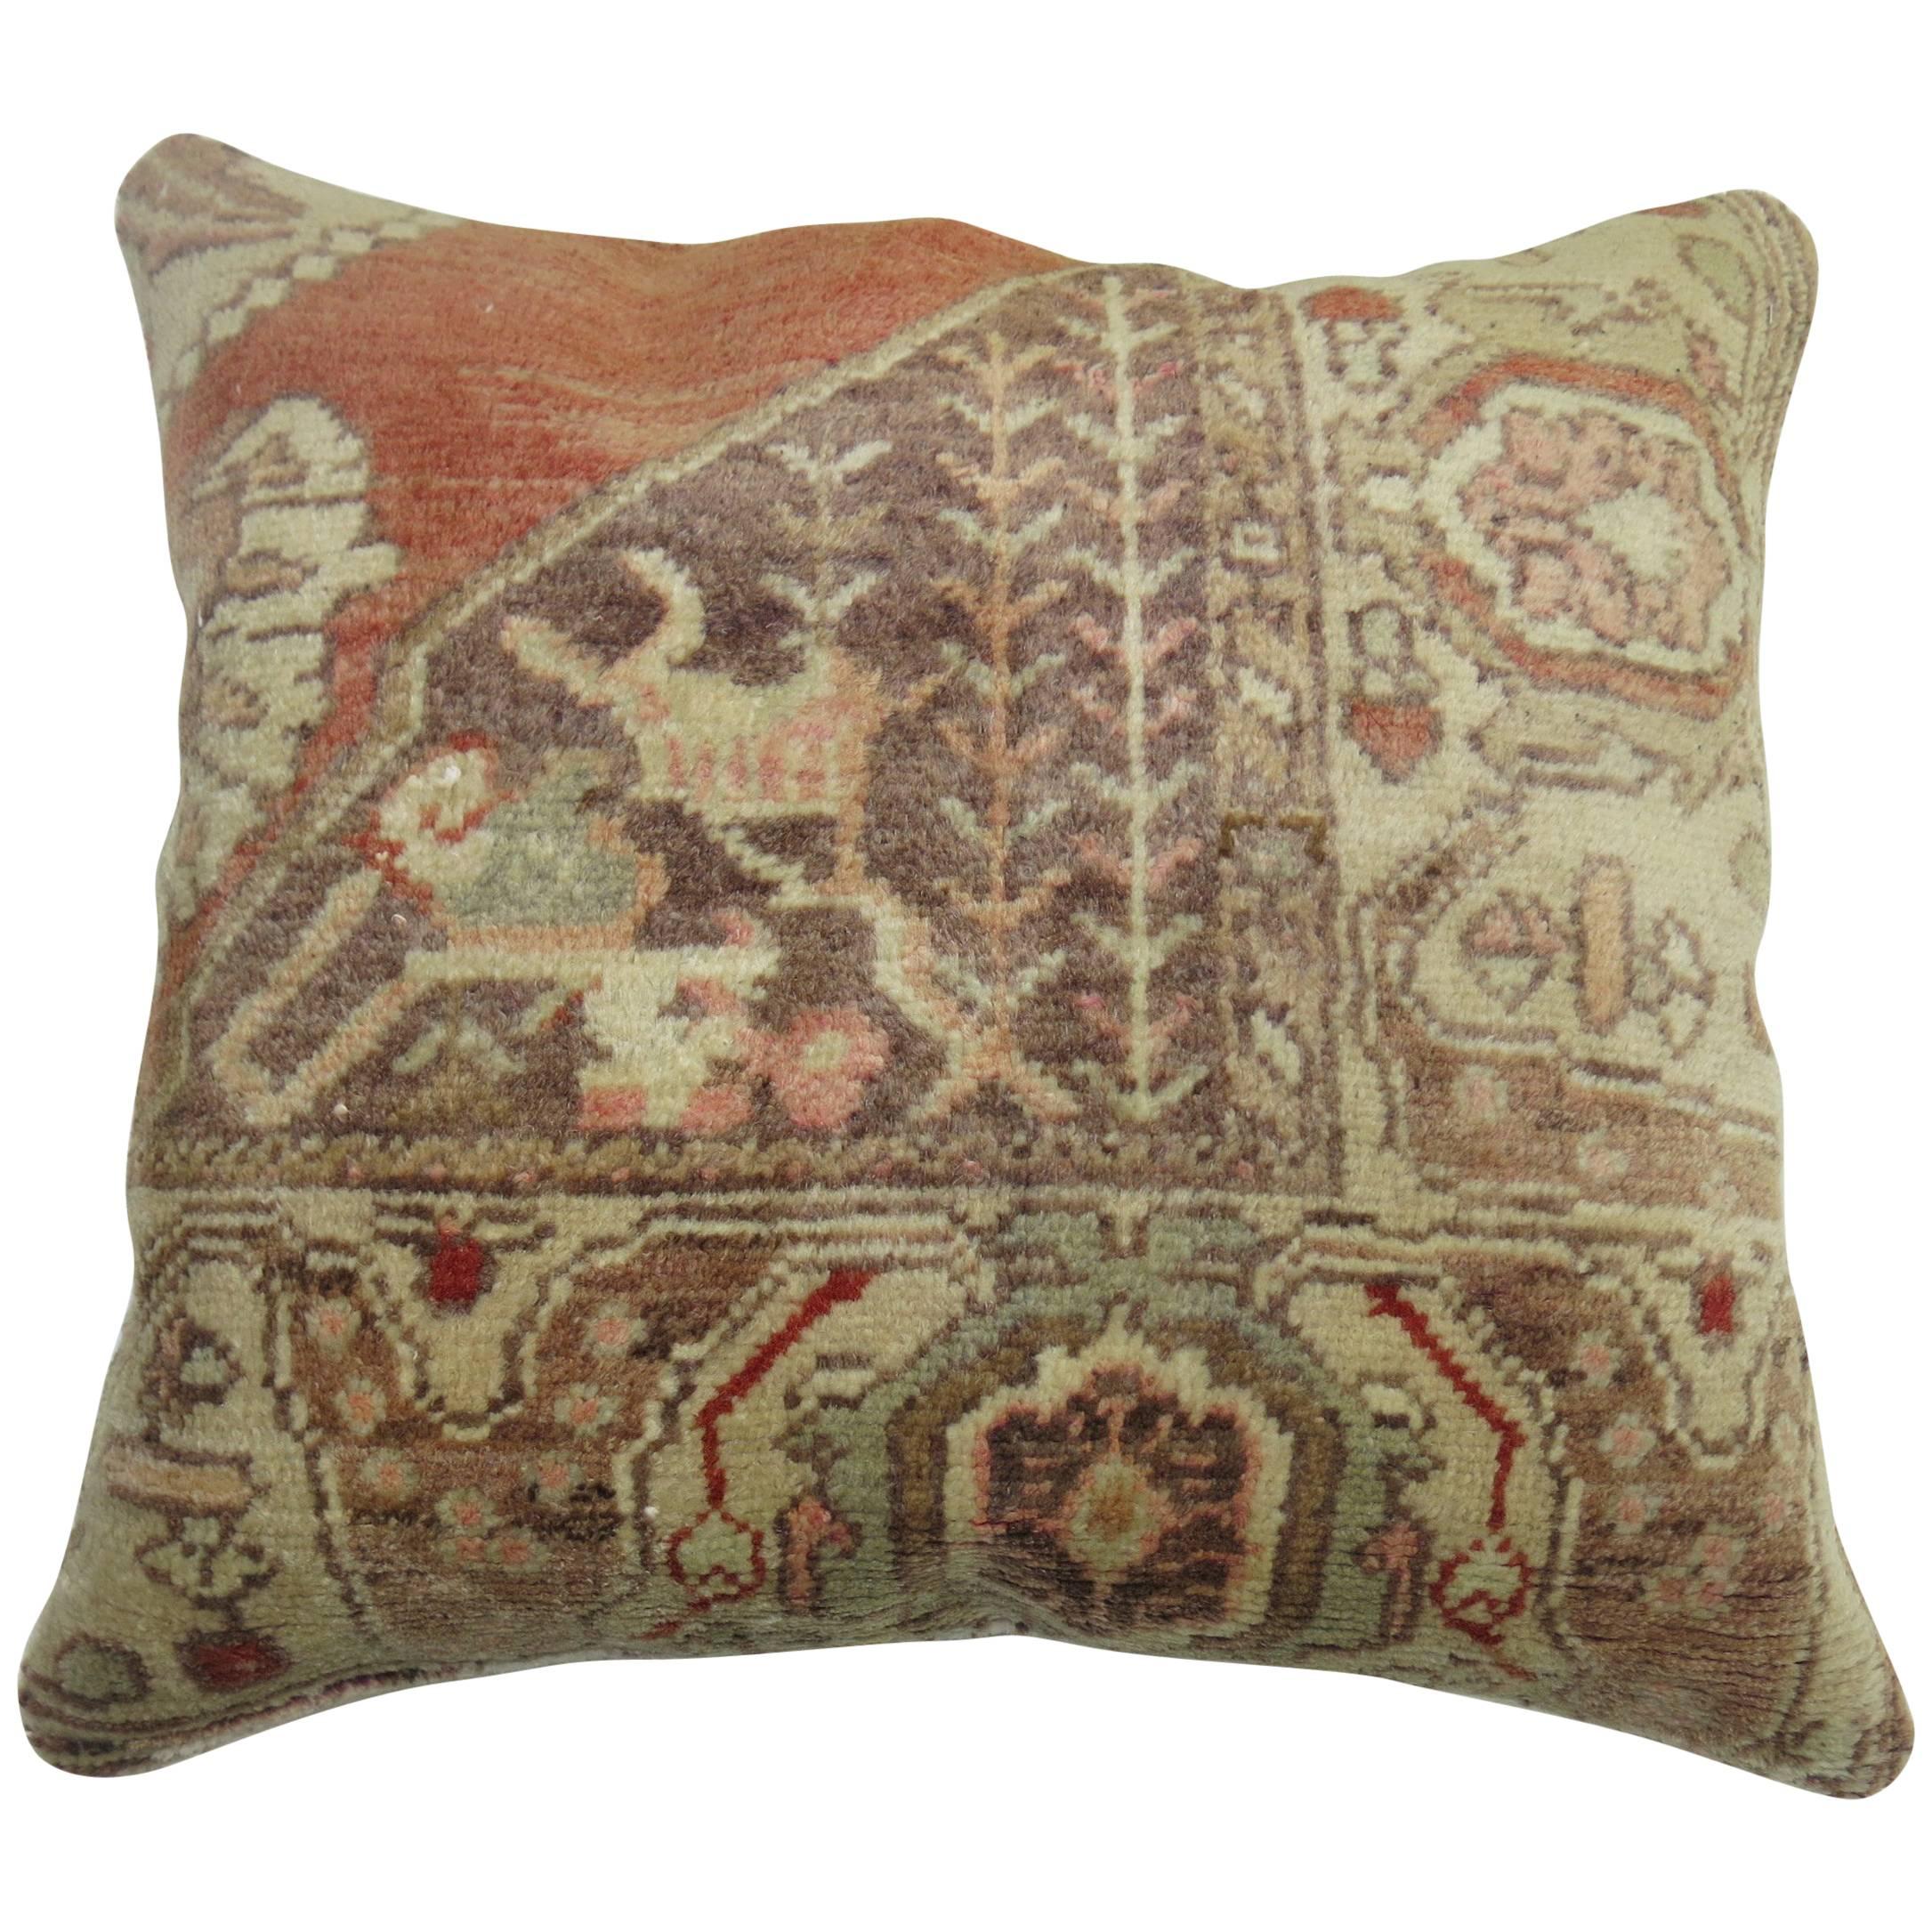 Decorative Turkish Rug Pillow